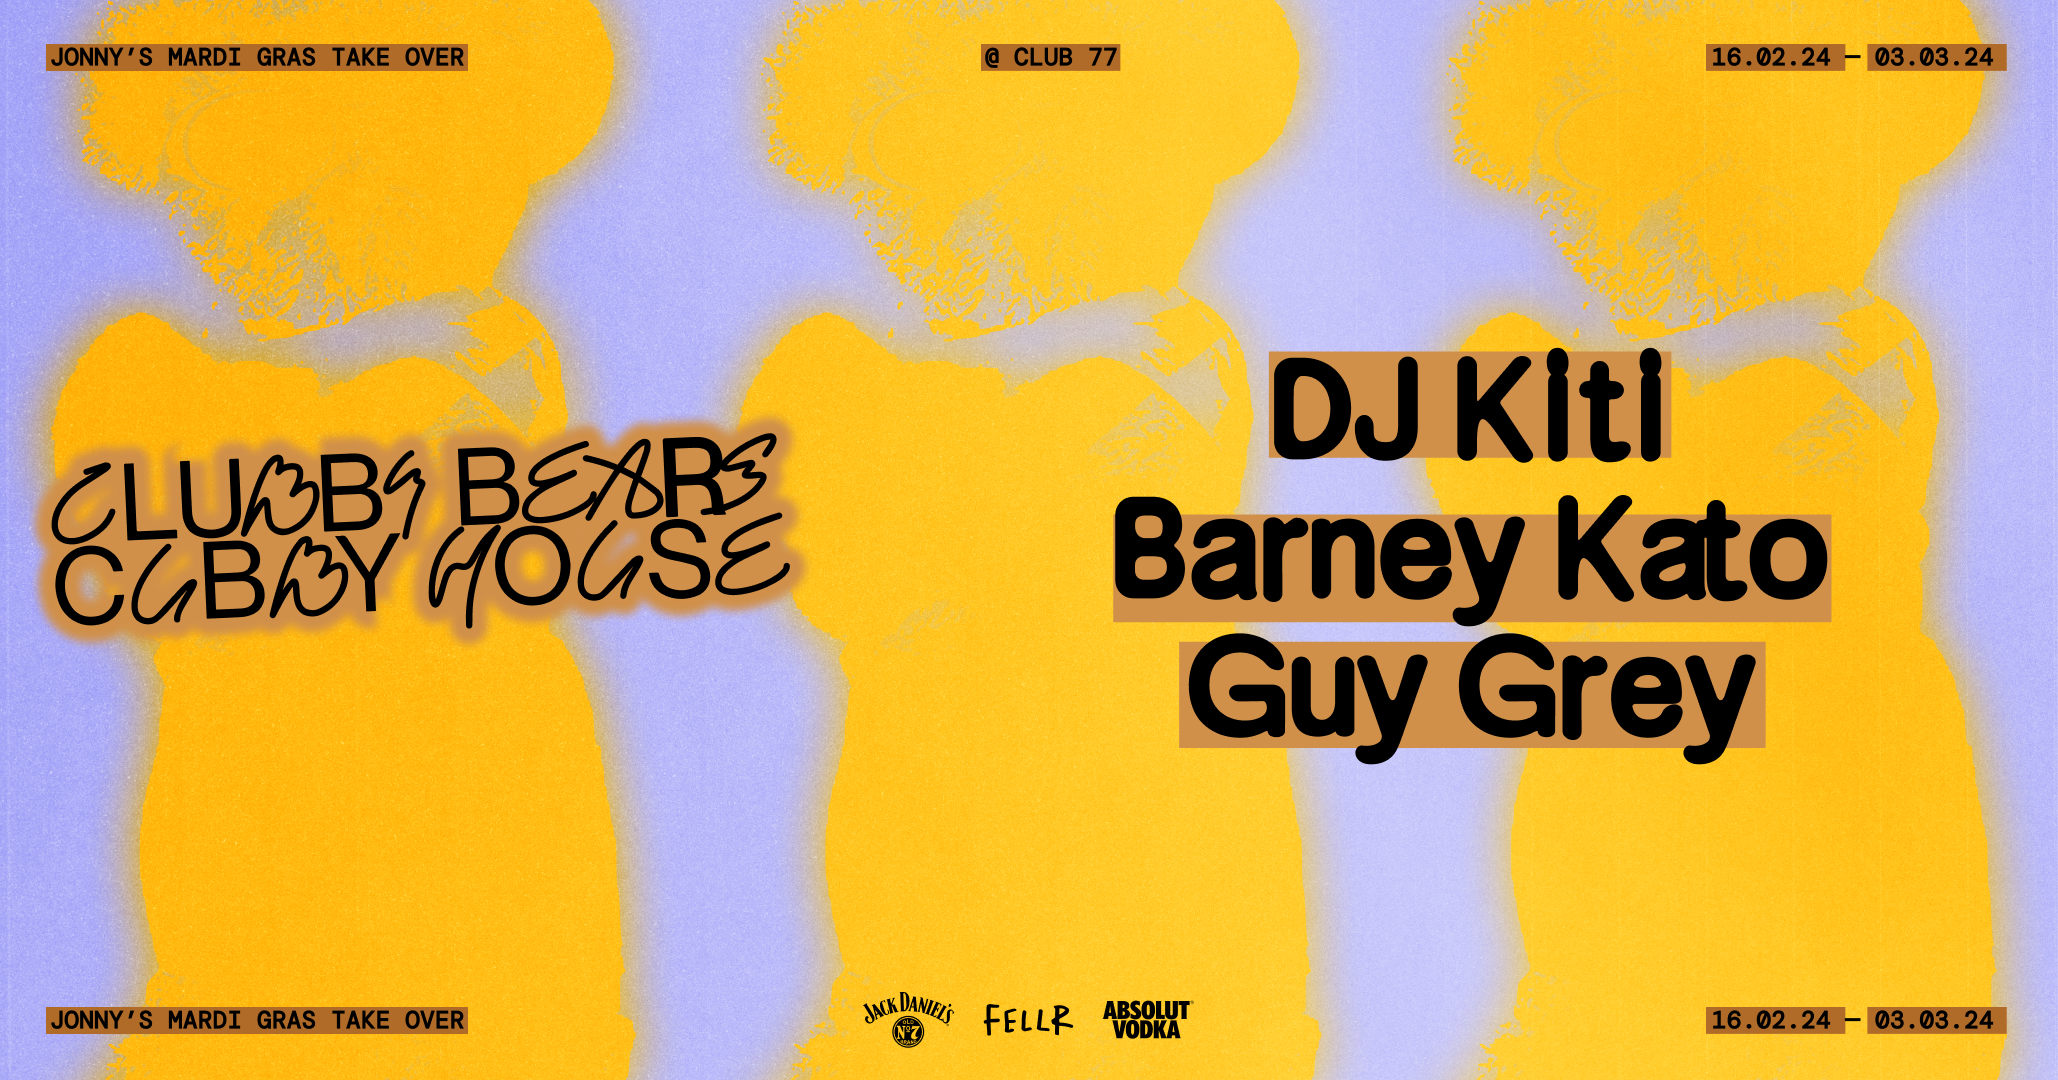 Clubby Bears Cubby House with DJ Kiti, Barney Kato, Guy Grey - フライヤー表